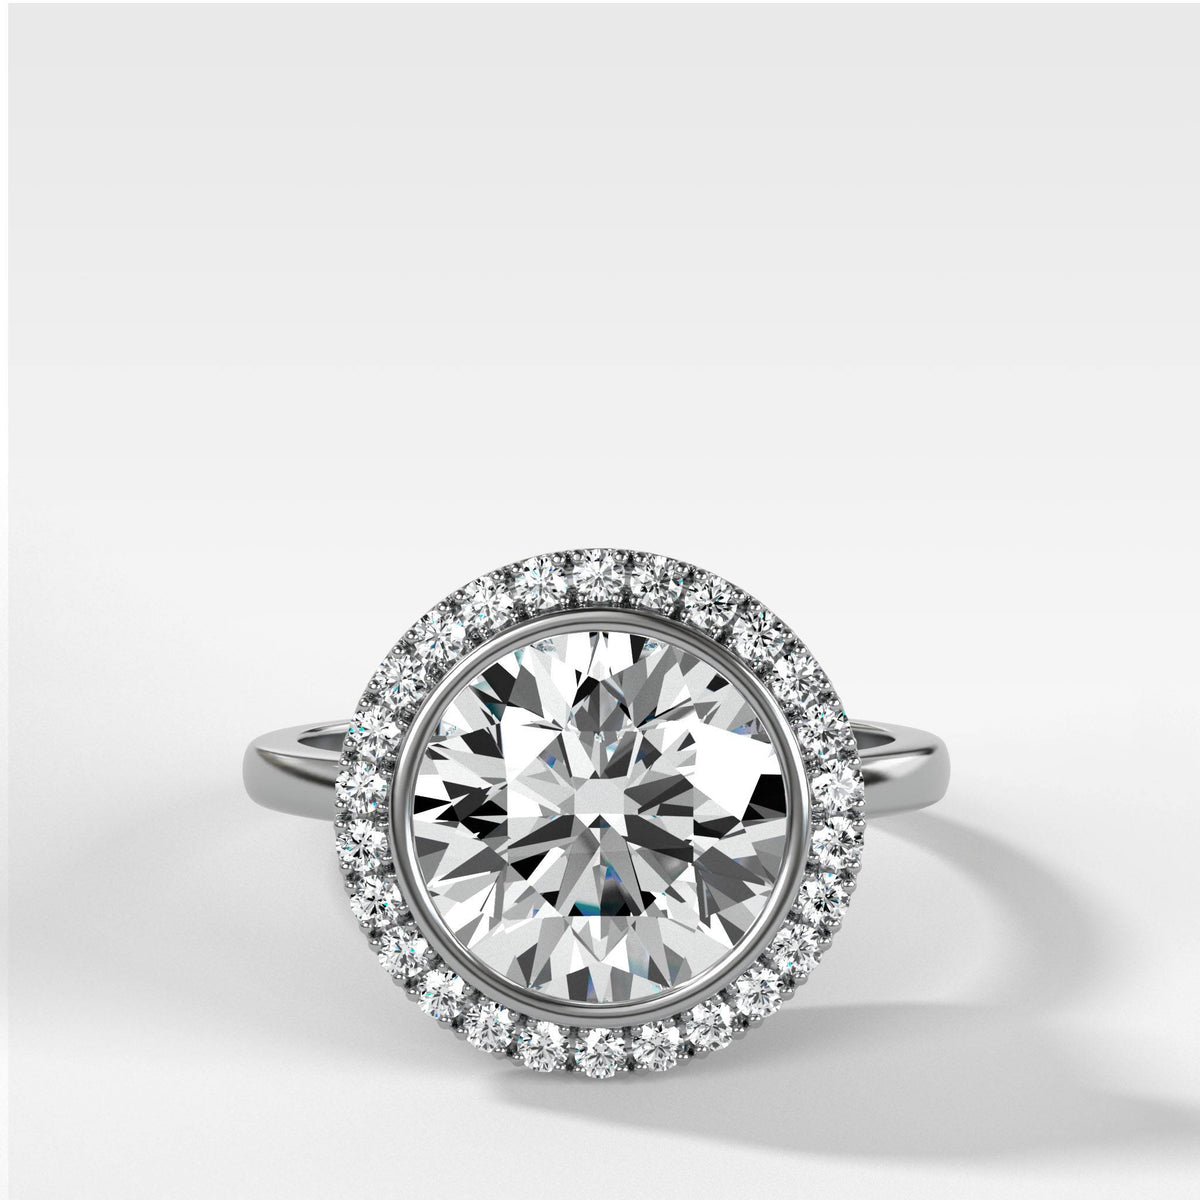 Classic 14k Gold Diamond Halo Engagement Ring with Aquamarine Gemstone